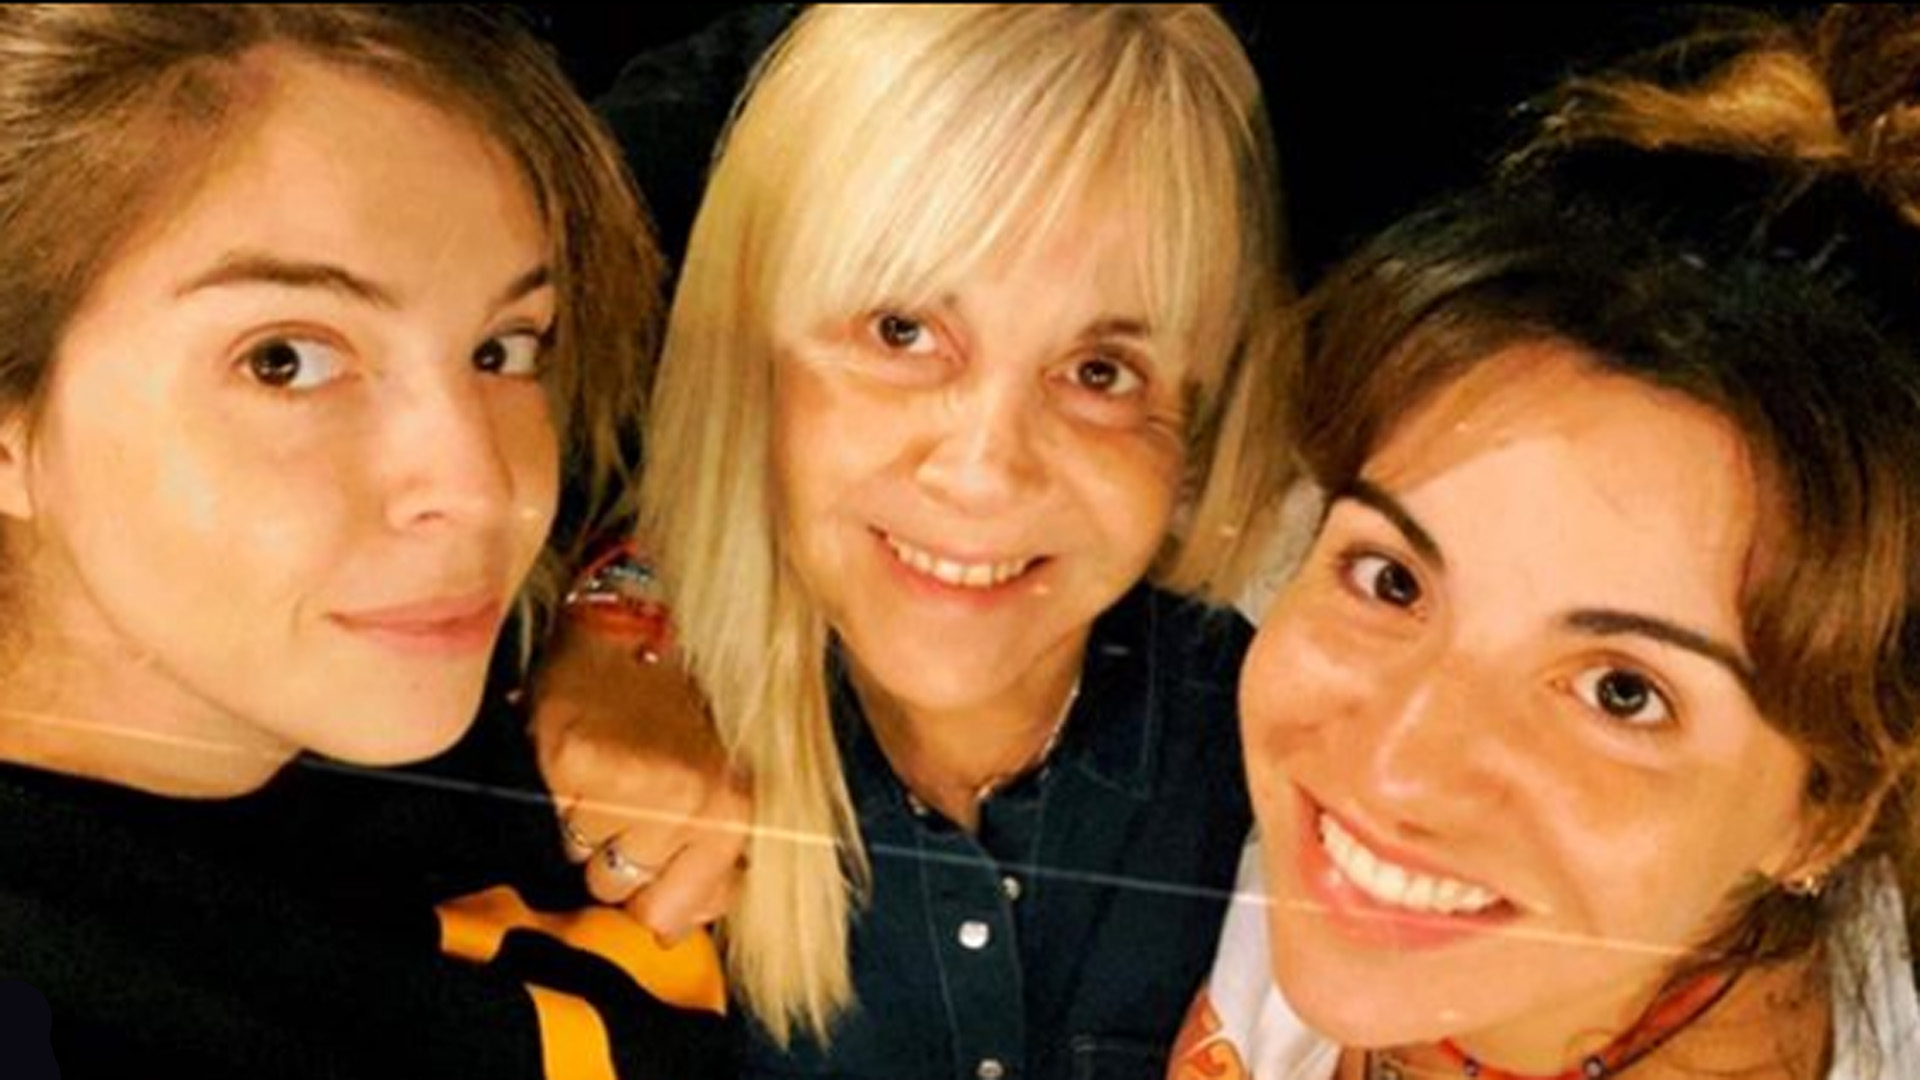 El visto bueno de Dalma y Gianinna fue un factor clave para que Claudia aceptara este nuevo desafío (Foto: Instagram)